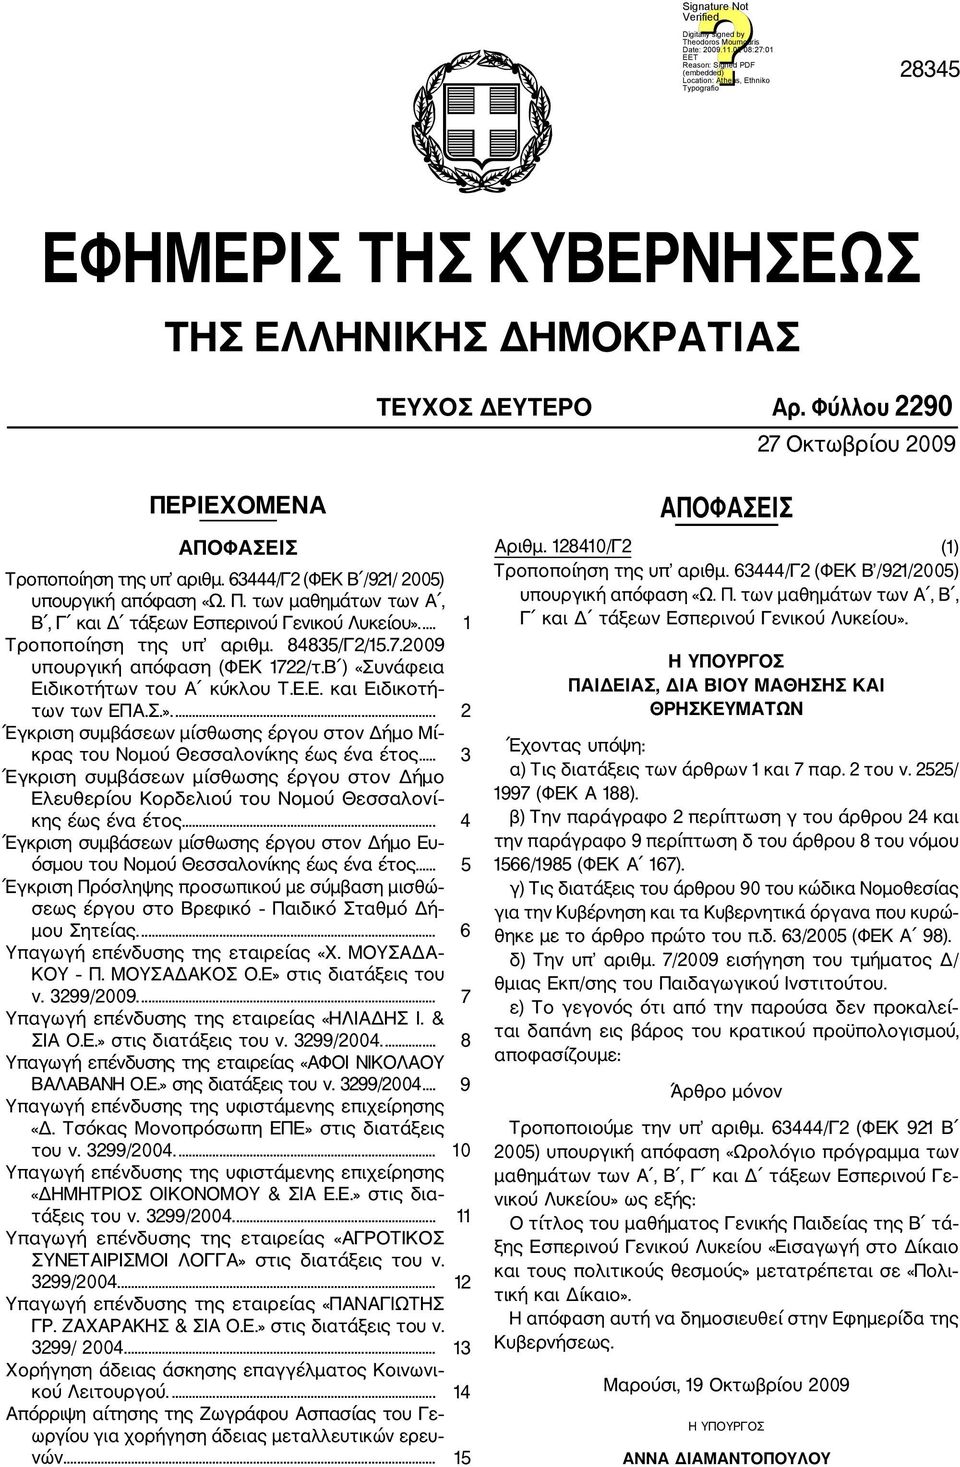 Β ) «Συνάφεια Eιδικοτήτων του Α κύκλου Τ.Ε.Ε. και Eιδικοτή των των ΕΠΑ.Σ.».... 2 Έγκριση συμβάσεων μίσθωσης έργου στον Δήμο Μί κρας του Νομού Θεσσαλονίκης έως ένα έτος.